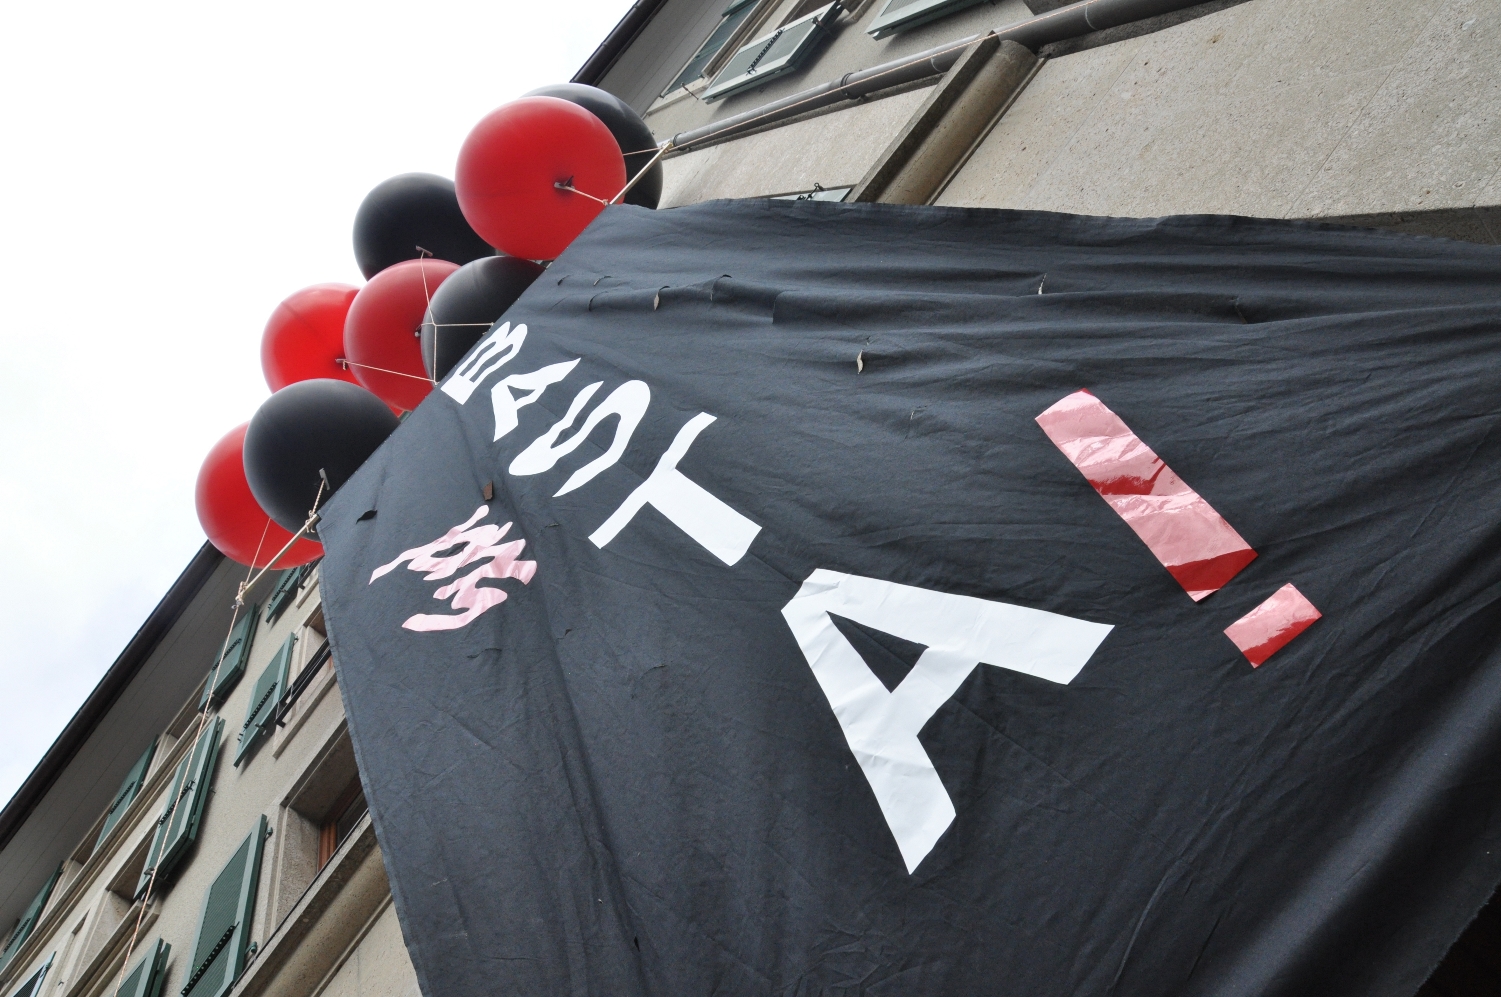 Banderole Basta devant le DFJC - 1er mai 2014 - Lausanne